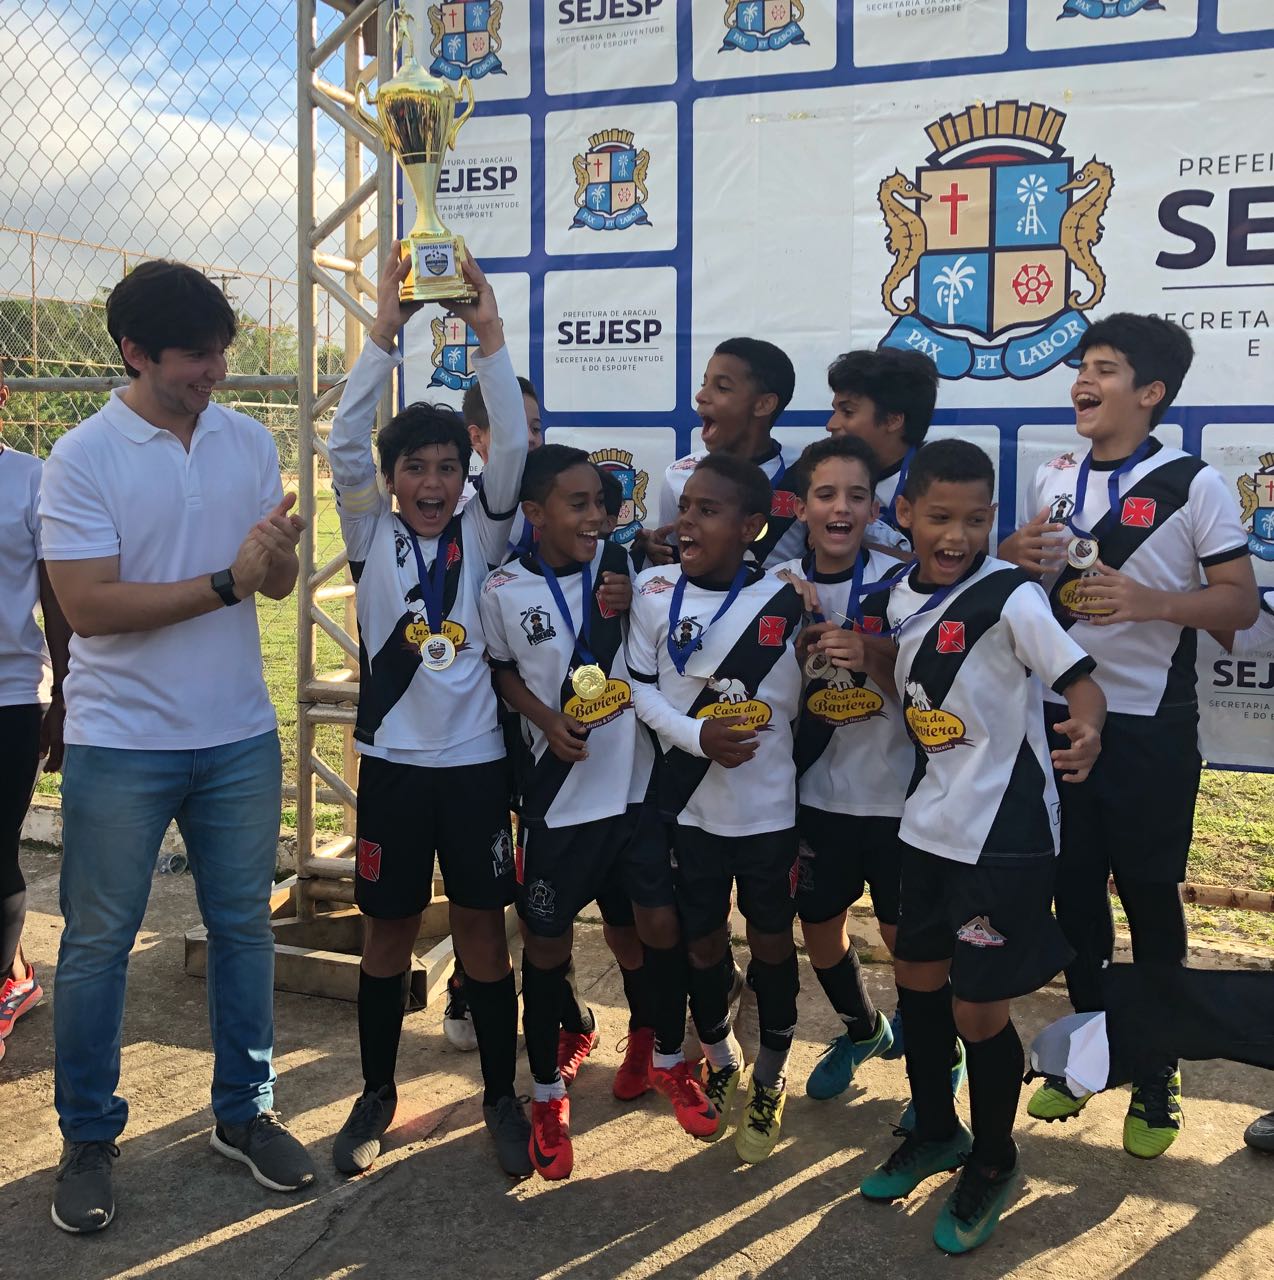 6 escolas de futebol em Aracaju - Solutudo